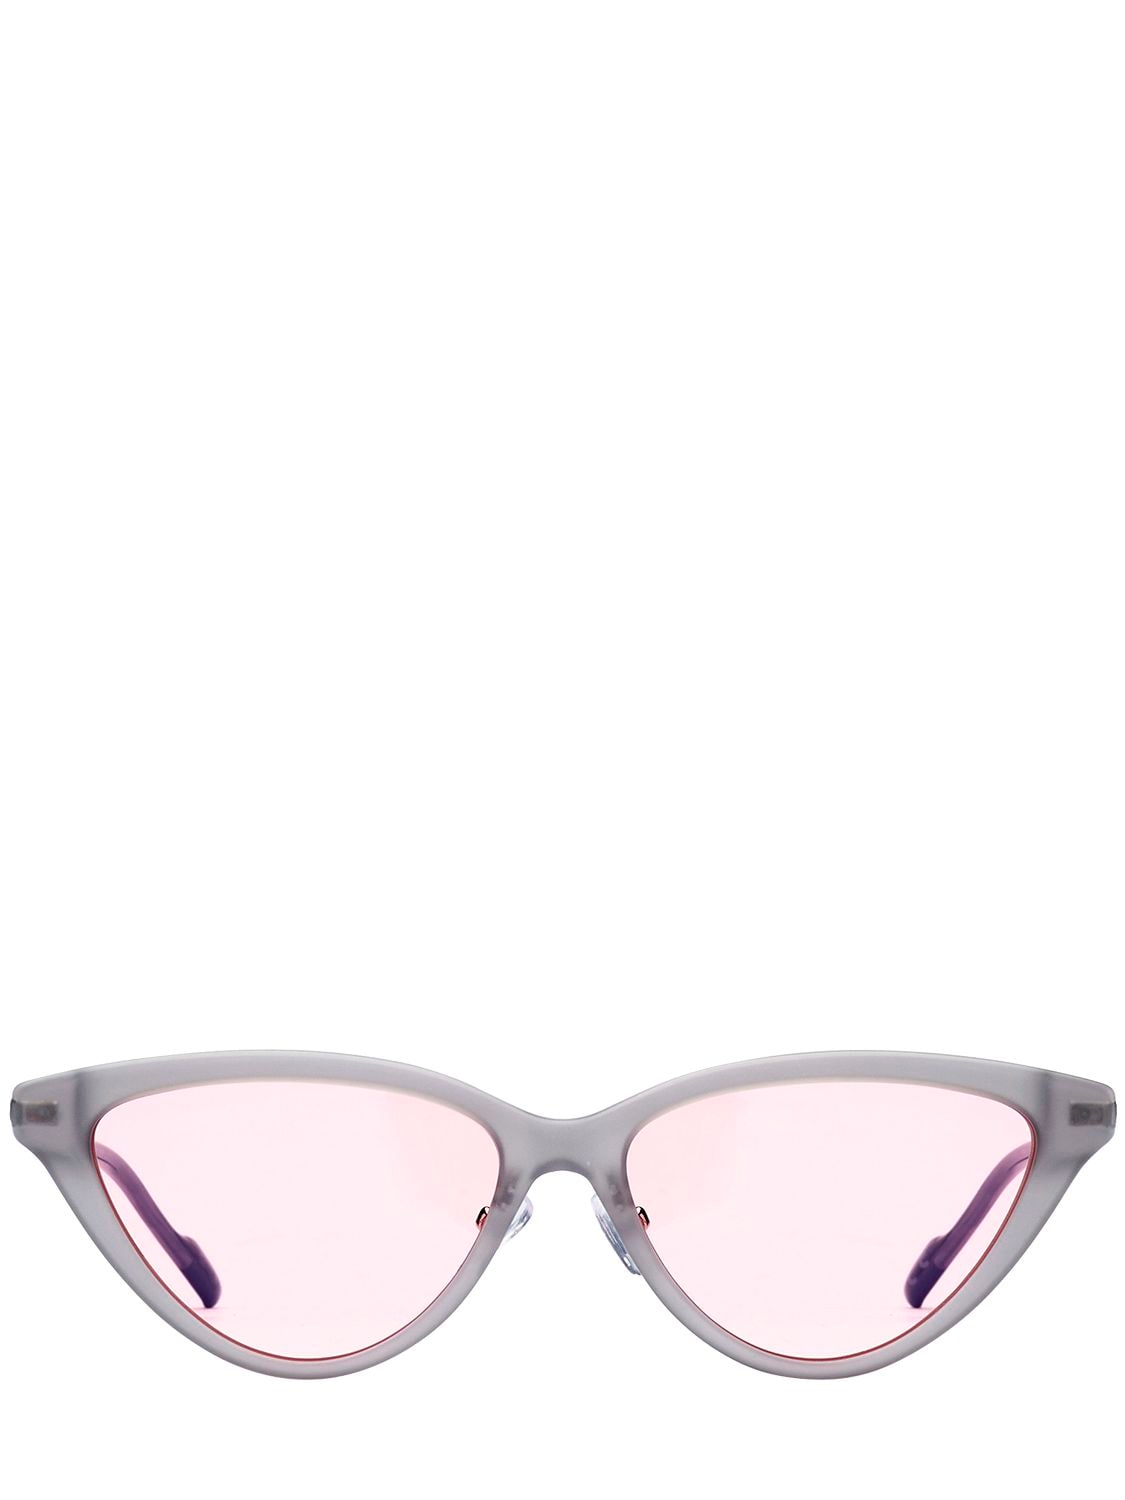 Adidas Originals By Italia Independent Acetate Cat-eye Sunglasses In Dark Grey